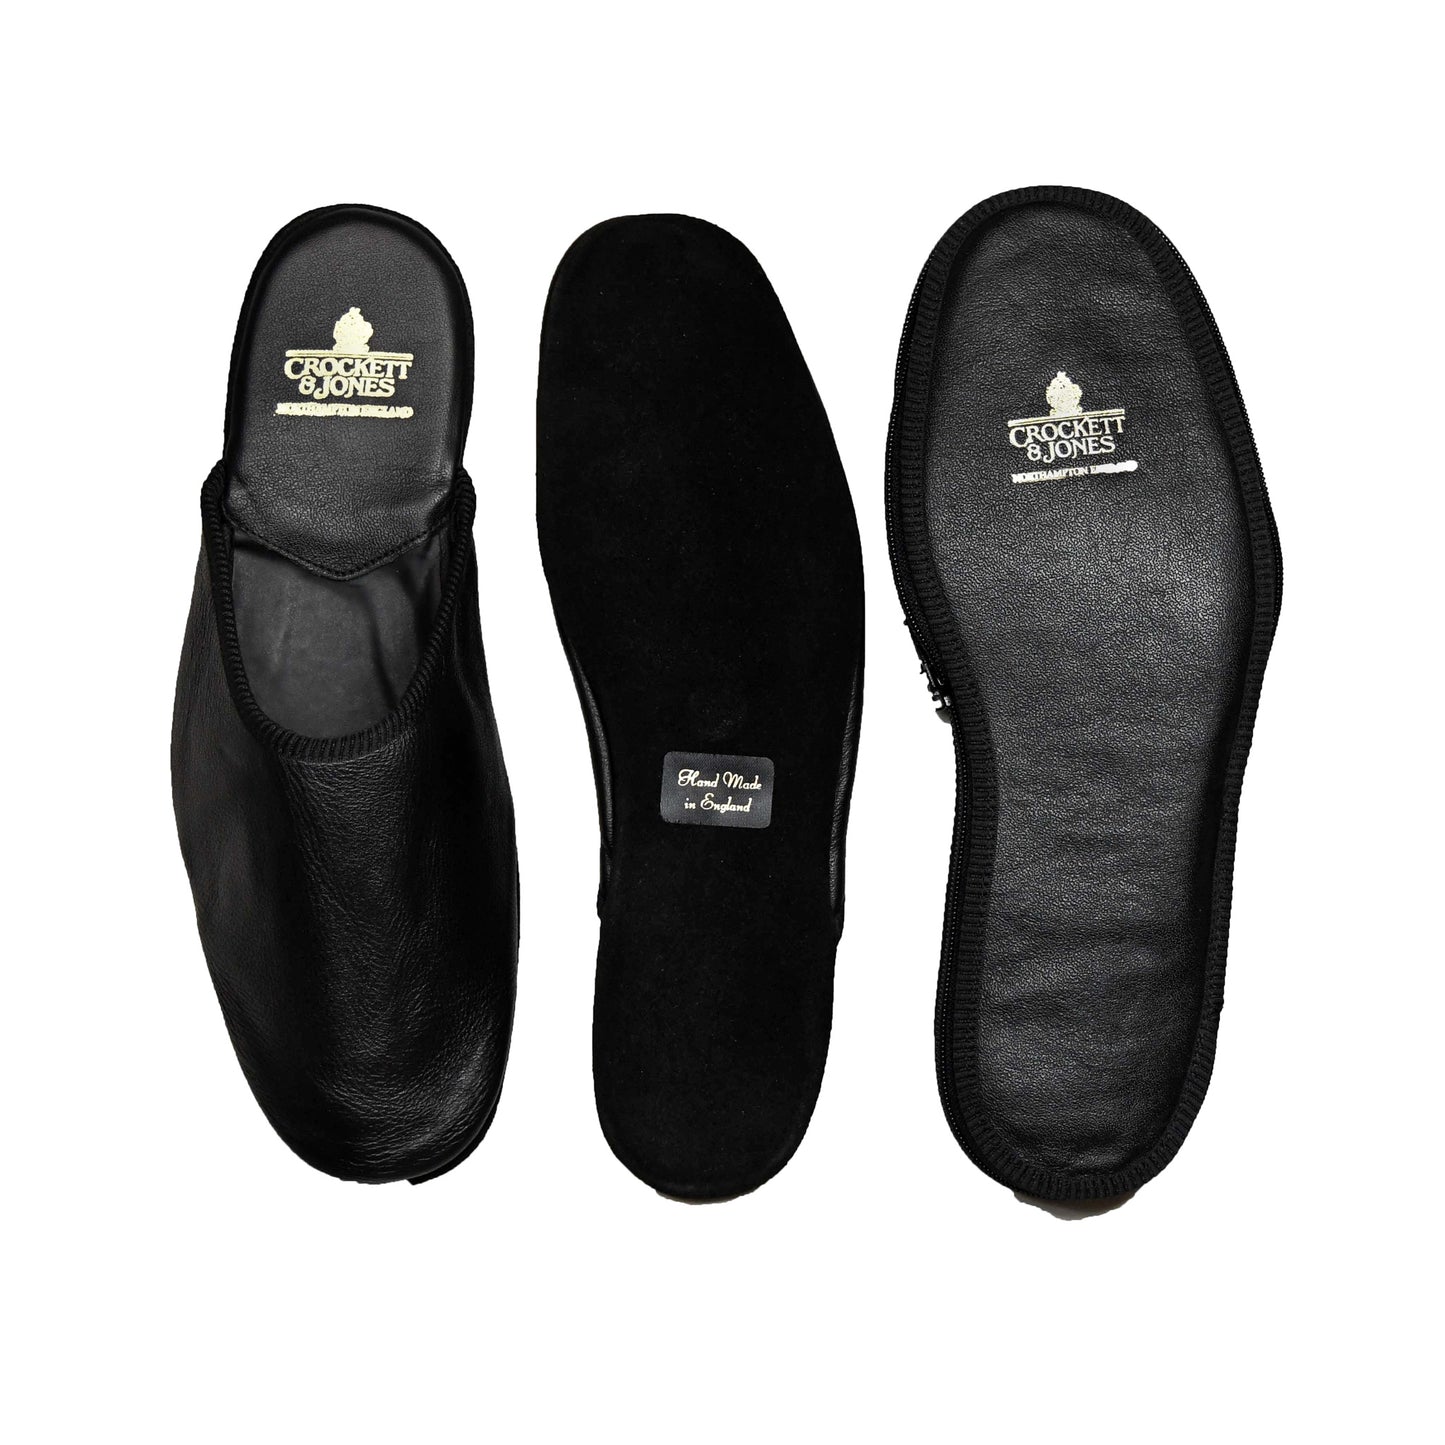 Travel slippers, Crockett & Jones